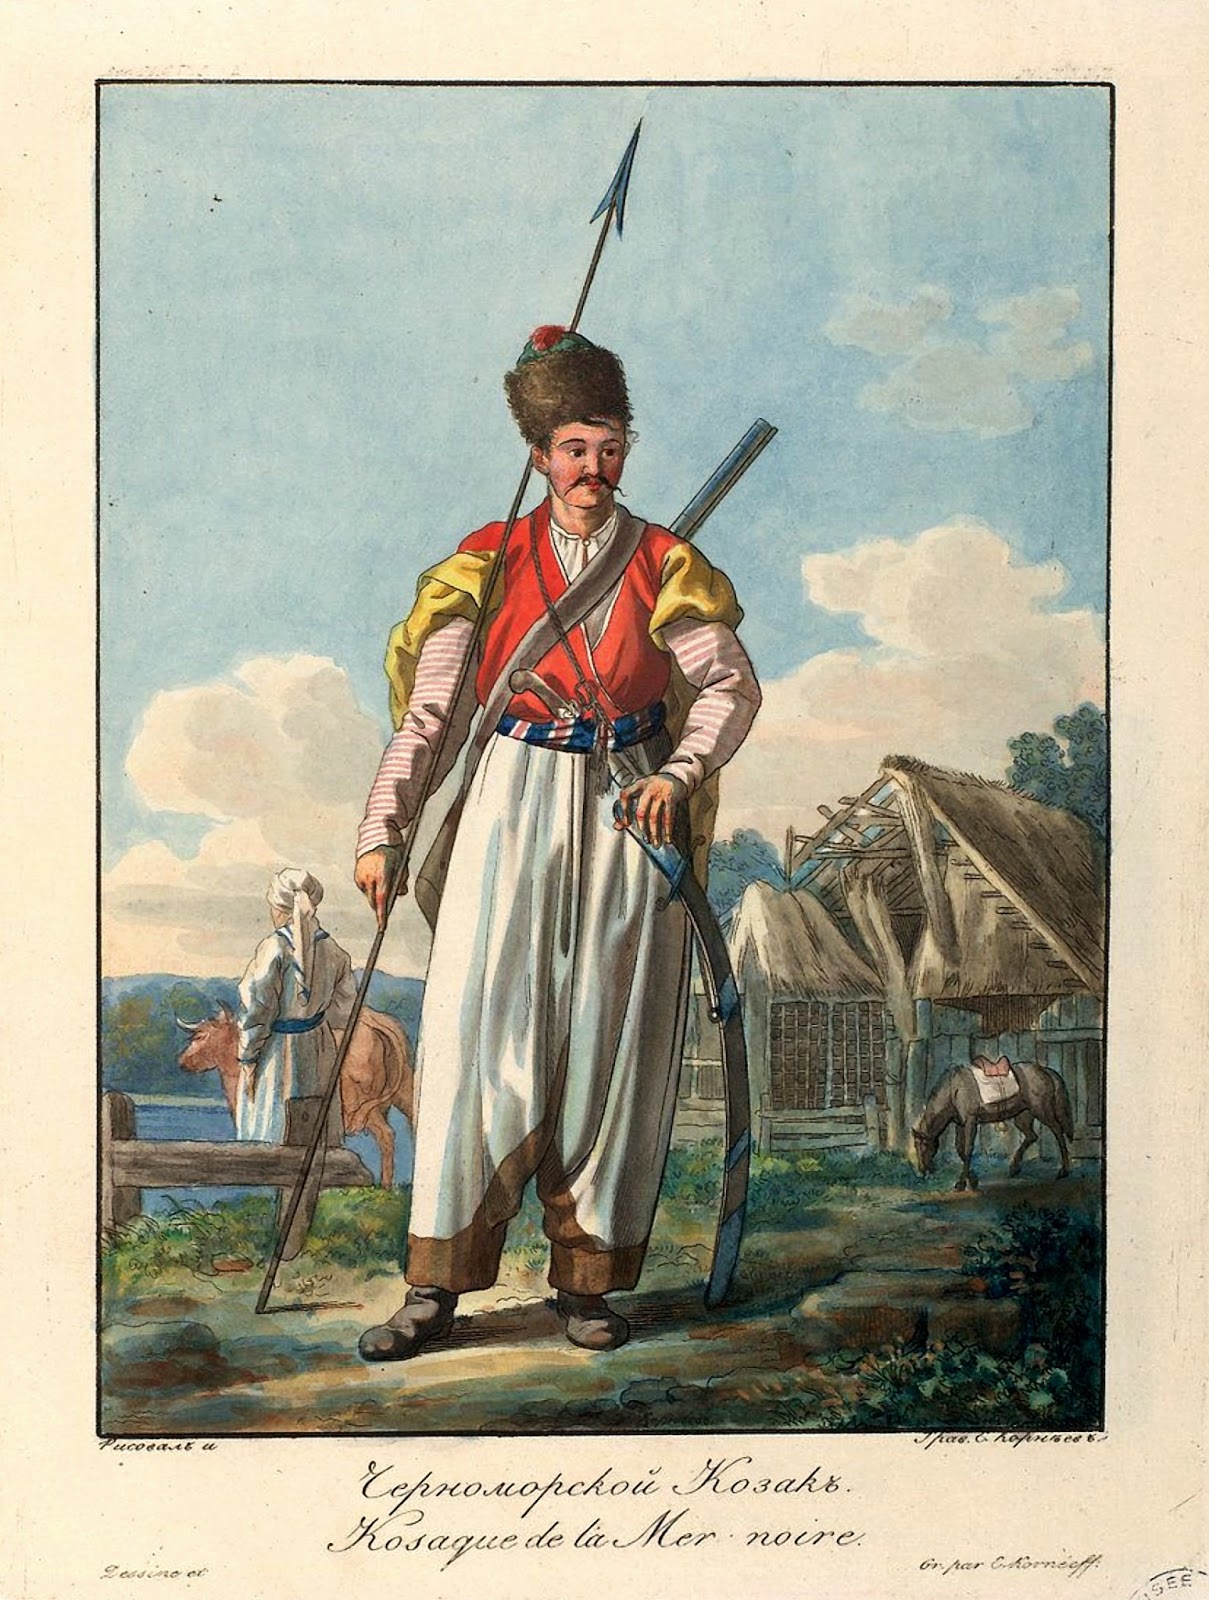 Повседневная жизнь кубанских казаков в 18 веке